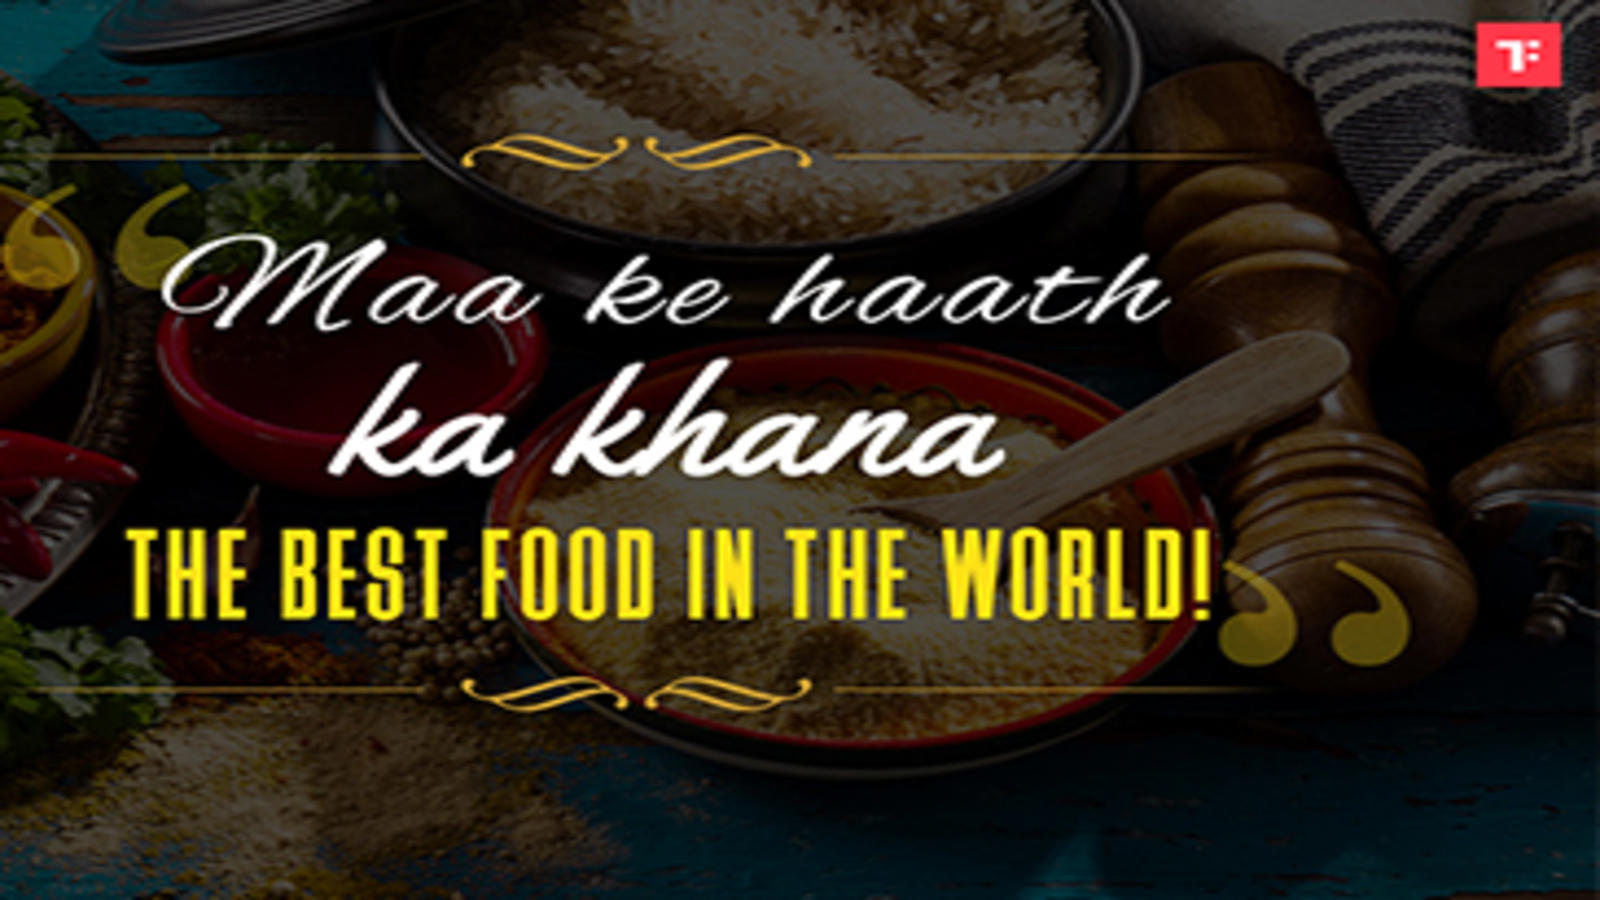 Maa ke haath ka khana' - The best food in the world! Recipe: 'Maa ...